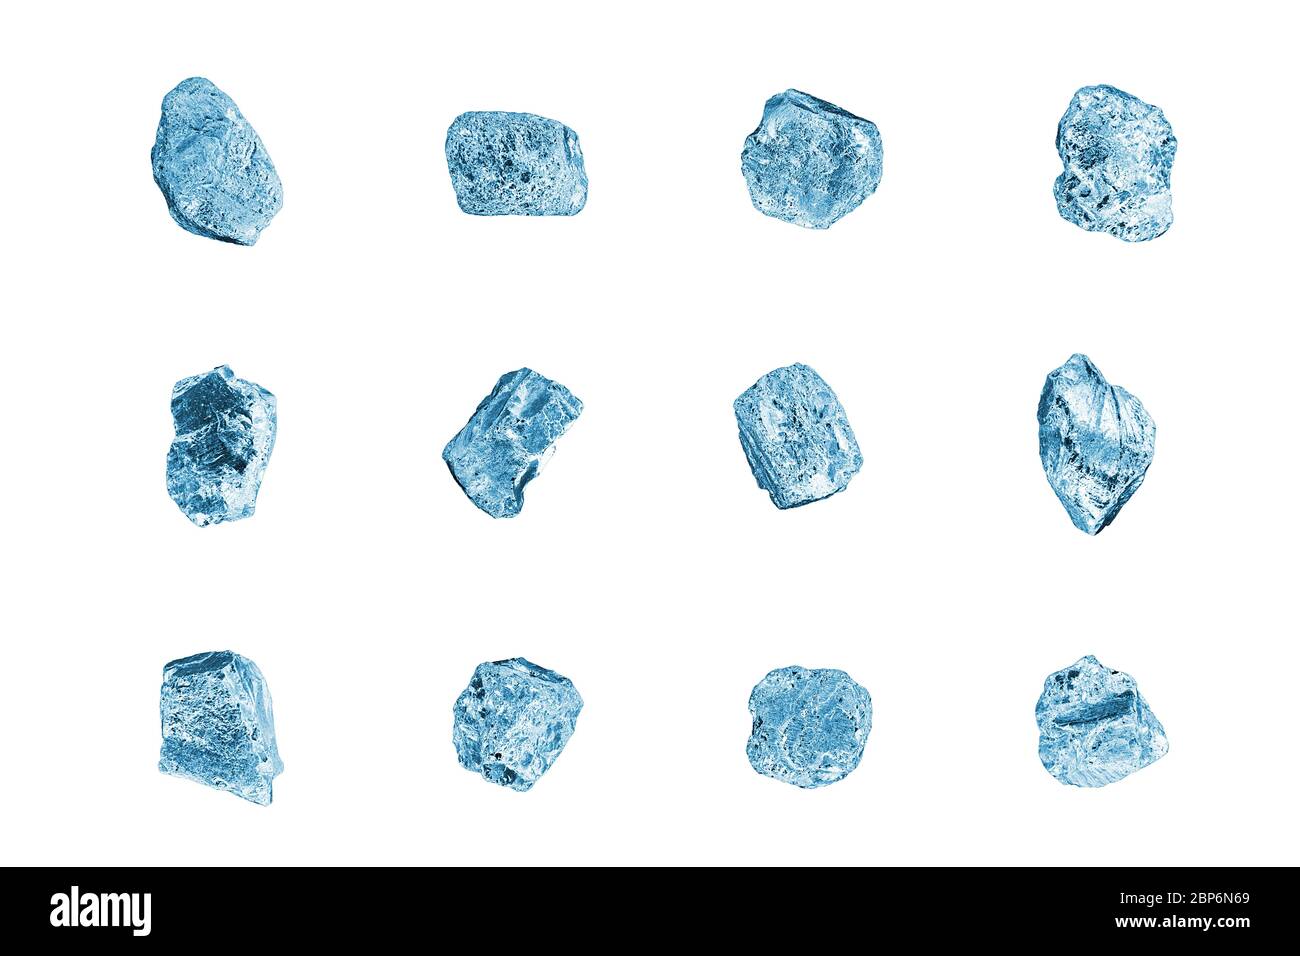 Pietre blu gemma sfondo bianco closeup isolato, set di cubetti di ghiaccio tritato, raccolta di diamanti grezzi, grezzi brillanti texture, rocce, cristalli, minerale Foto Stock